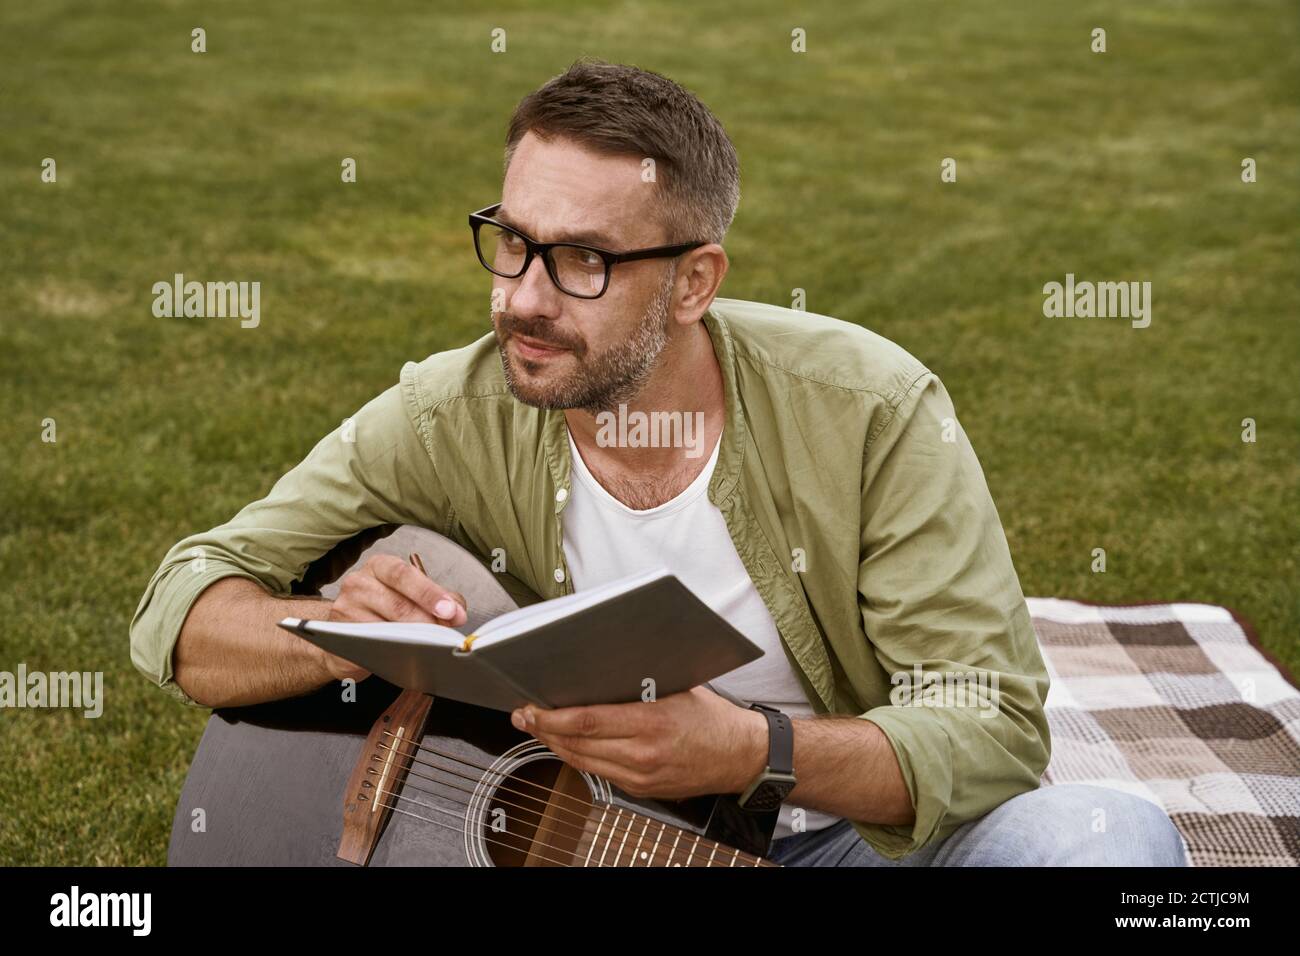 Jeune homme attentif portant des lunettes tenant une guitare acoustique et composant une chanson tout en étant assis sur une herbe verte à l'extérieur Banque D'Images